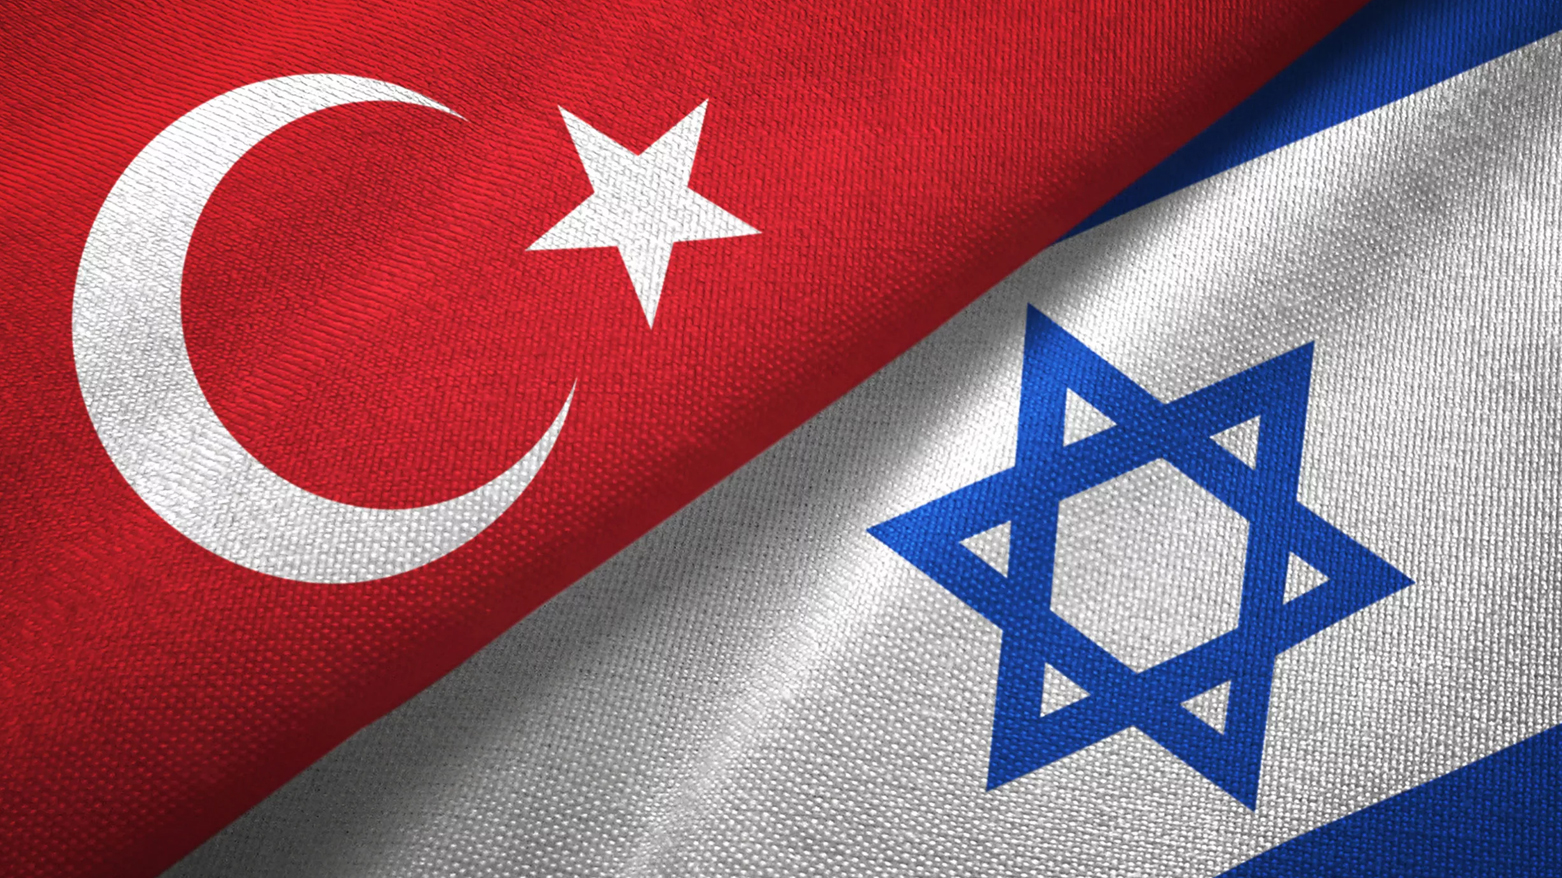 العلمان التركي والإسرائيلي